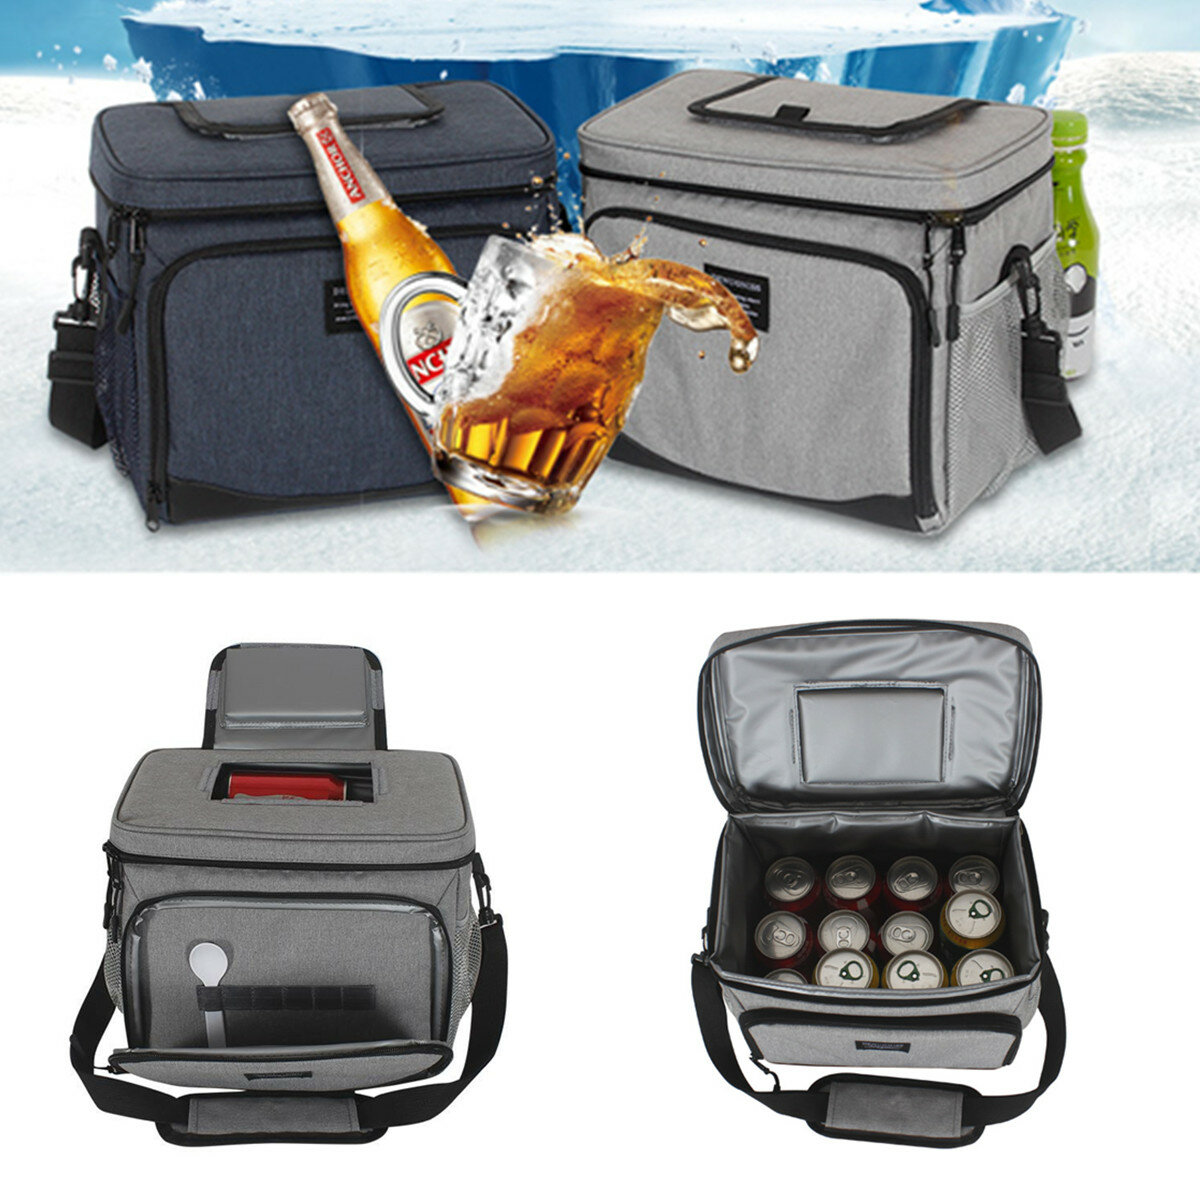 15L szabadtéri piknik hőszigetelt hűtőtáska ebéd étel doboz konténer tároló táska